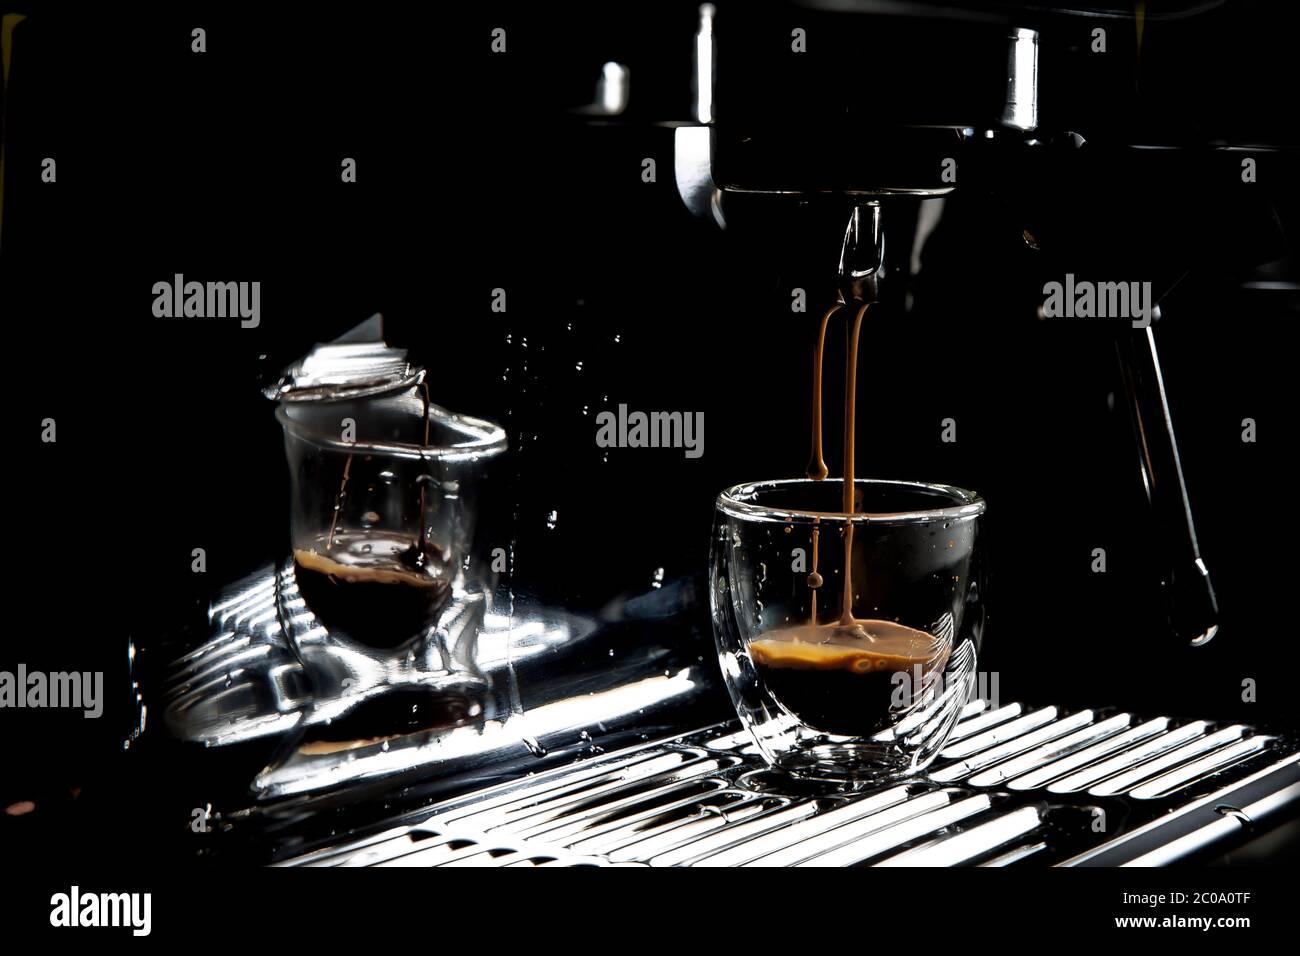 https://c8.alamy.com/compes/2c0a0tf/gotas-de-cafe-oscuro-goteando-en-una-taza-de-cafe-expreso-de-cristal-transparente-en-una-cafetera-expreso-manual-con-espacio-para-copias-primer-plano-2c0a0tf.jpg